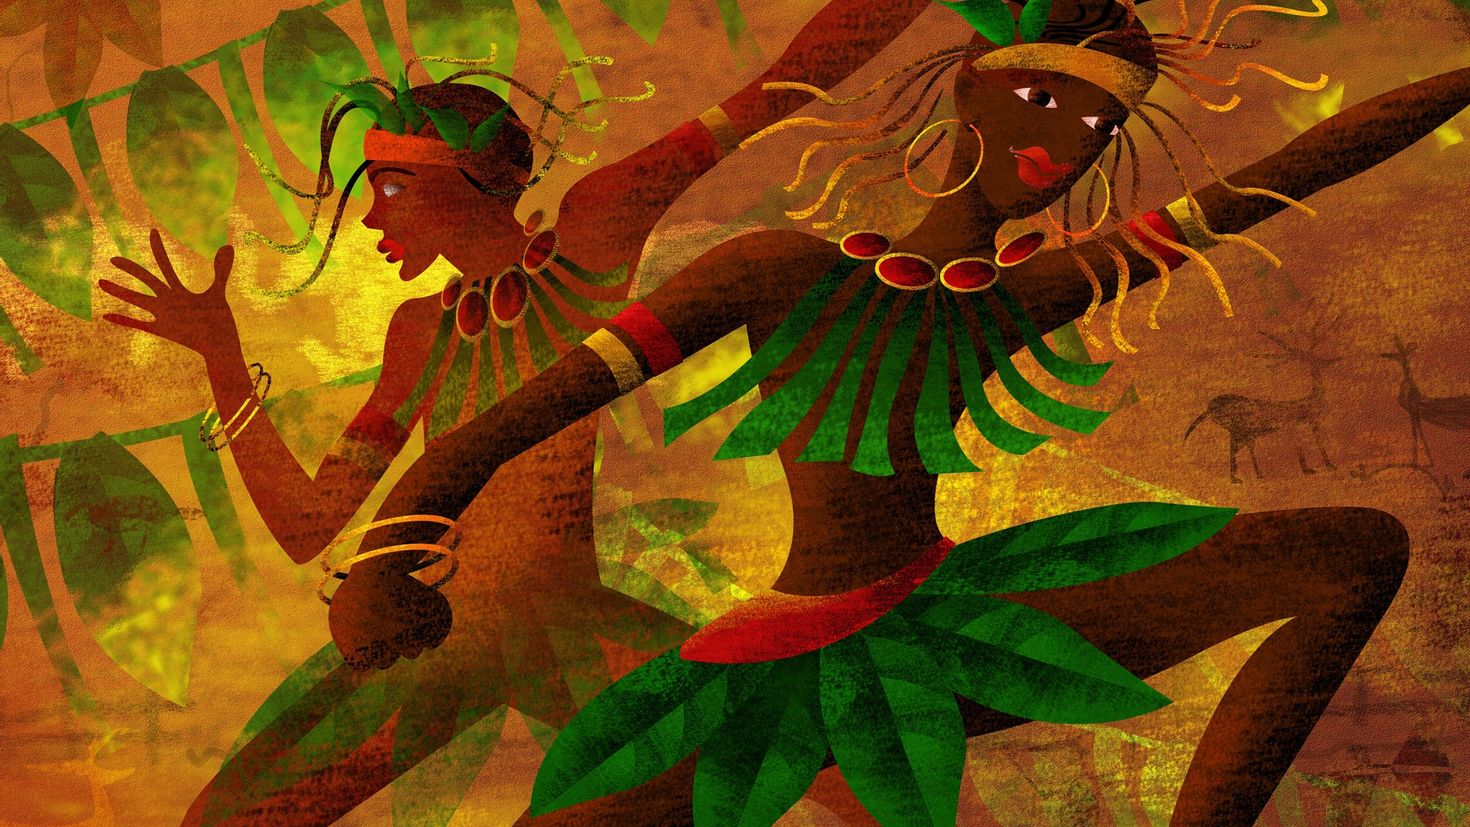 Негритянка в джунглях. Картины в африканском стиле. Африканский стиль в живописи. Африканские мотивы в живописи. Африканский танец живопись.